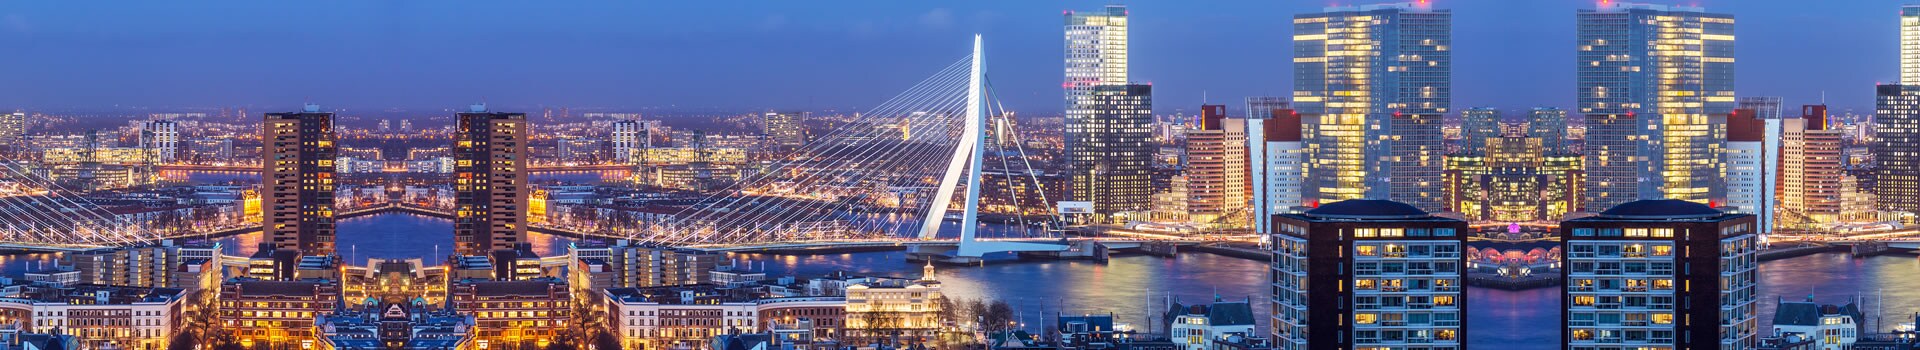 Porto - Rotterdam